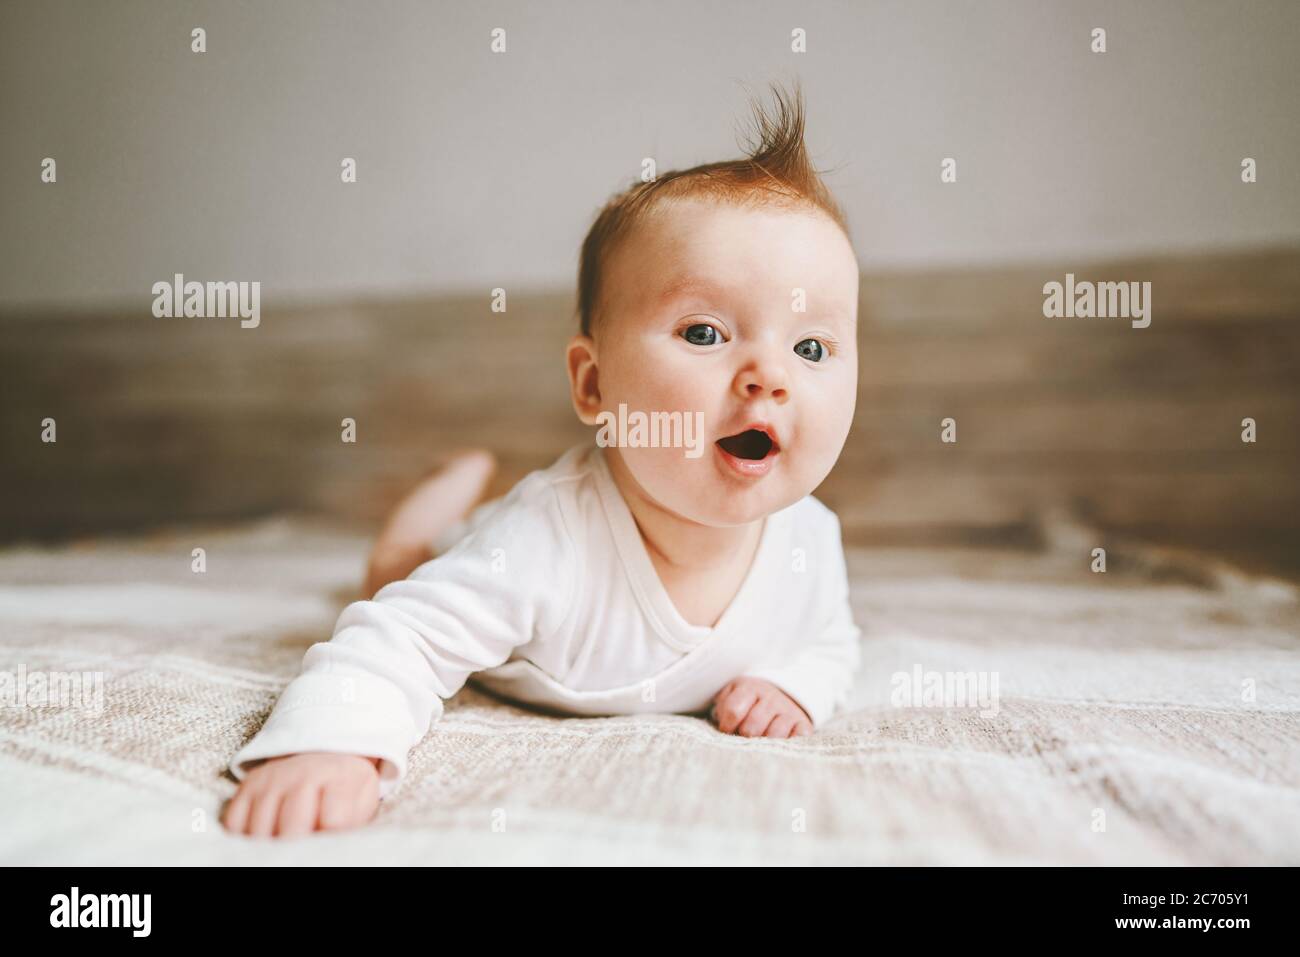 Niedliches Baby Baby Krabbeln zu Hause neugierig Kind Porträt Familie Lifestyle 3 Monate alt Mädchen Kind Stockfoto